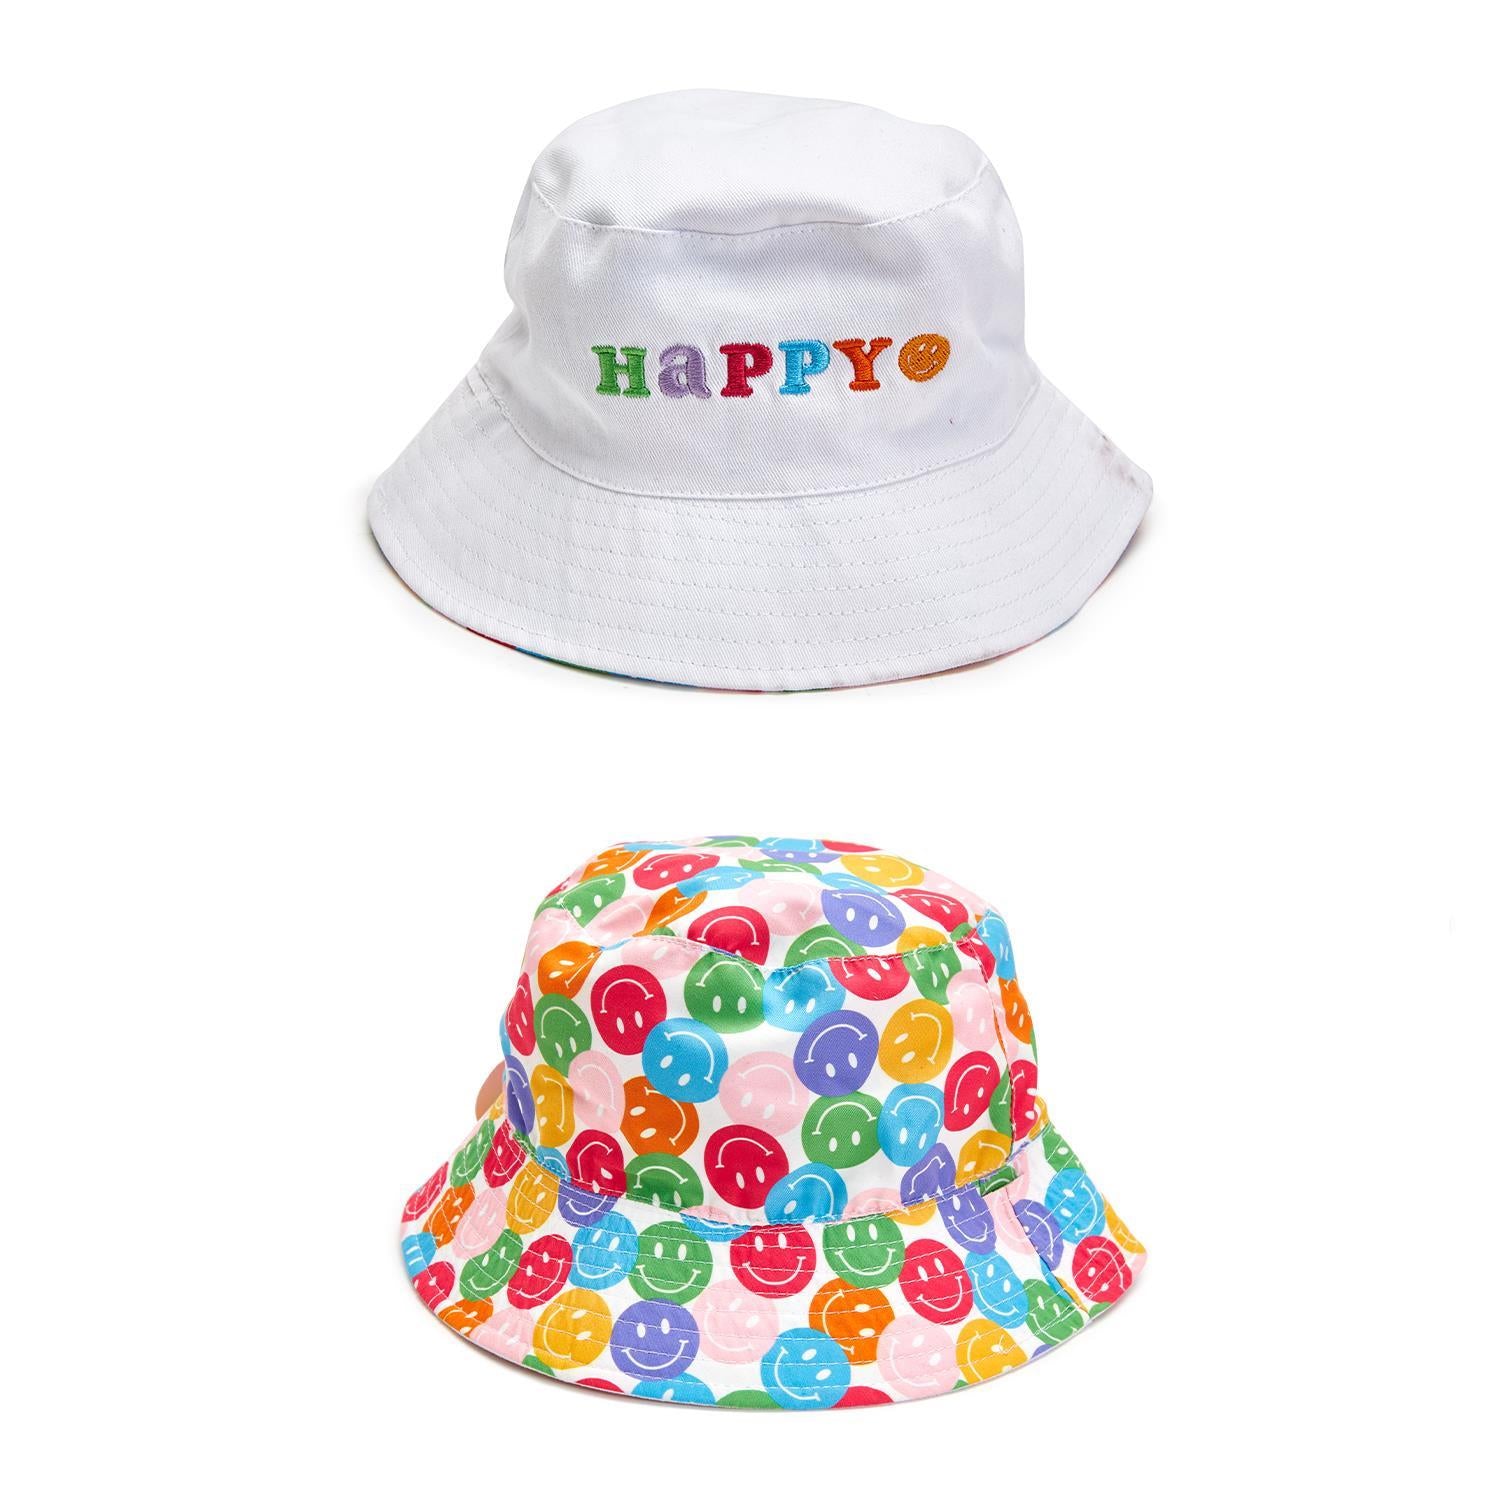 Happy Reversible Bucket Hat